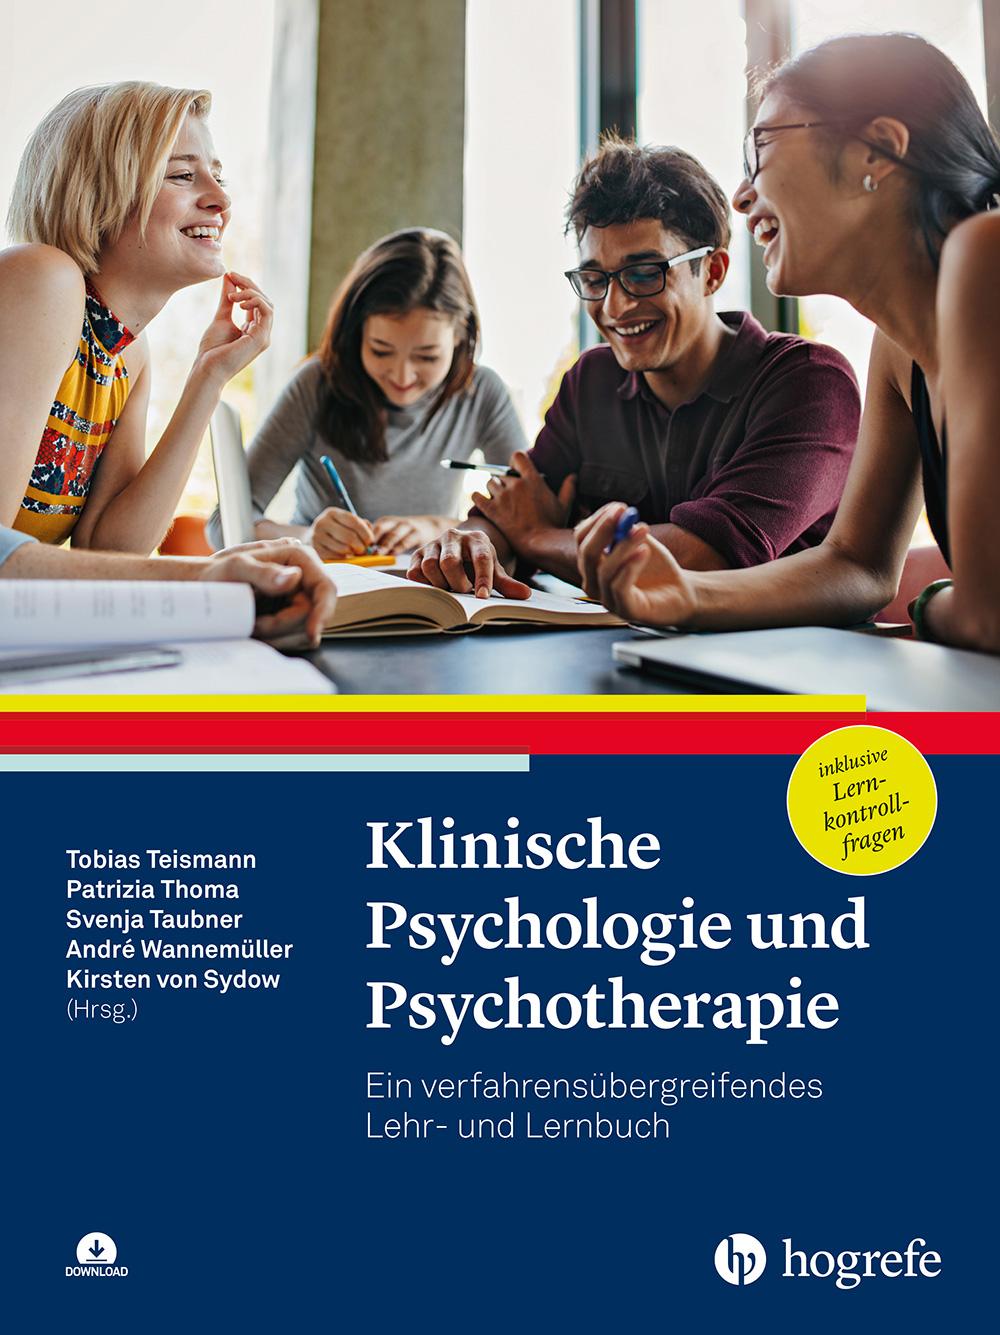 Kniha Klinische Psychologie und Psychotherapie Patrizia Thoma